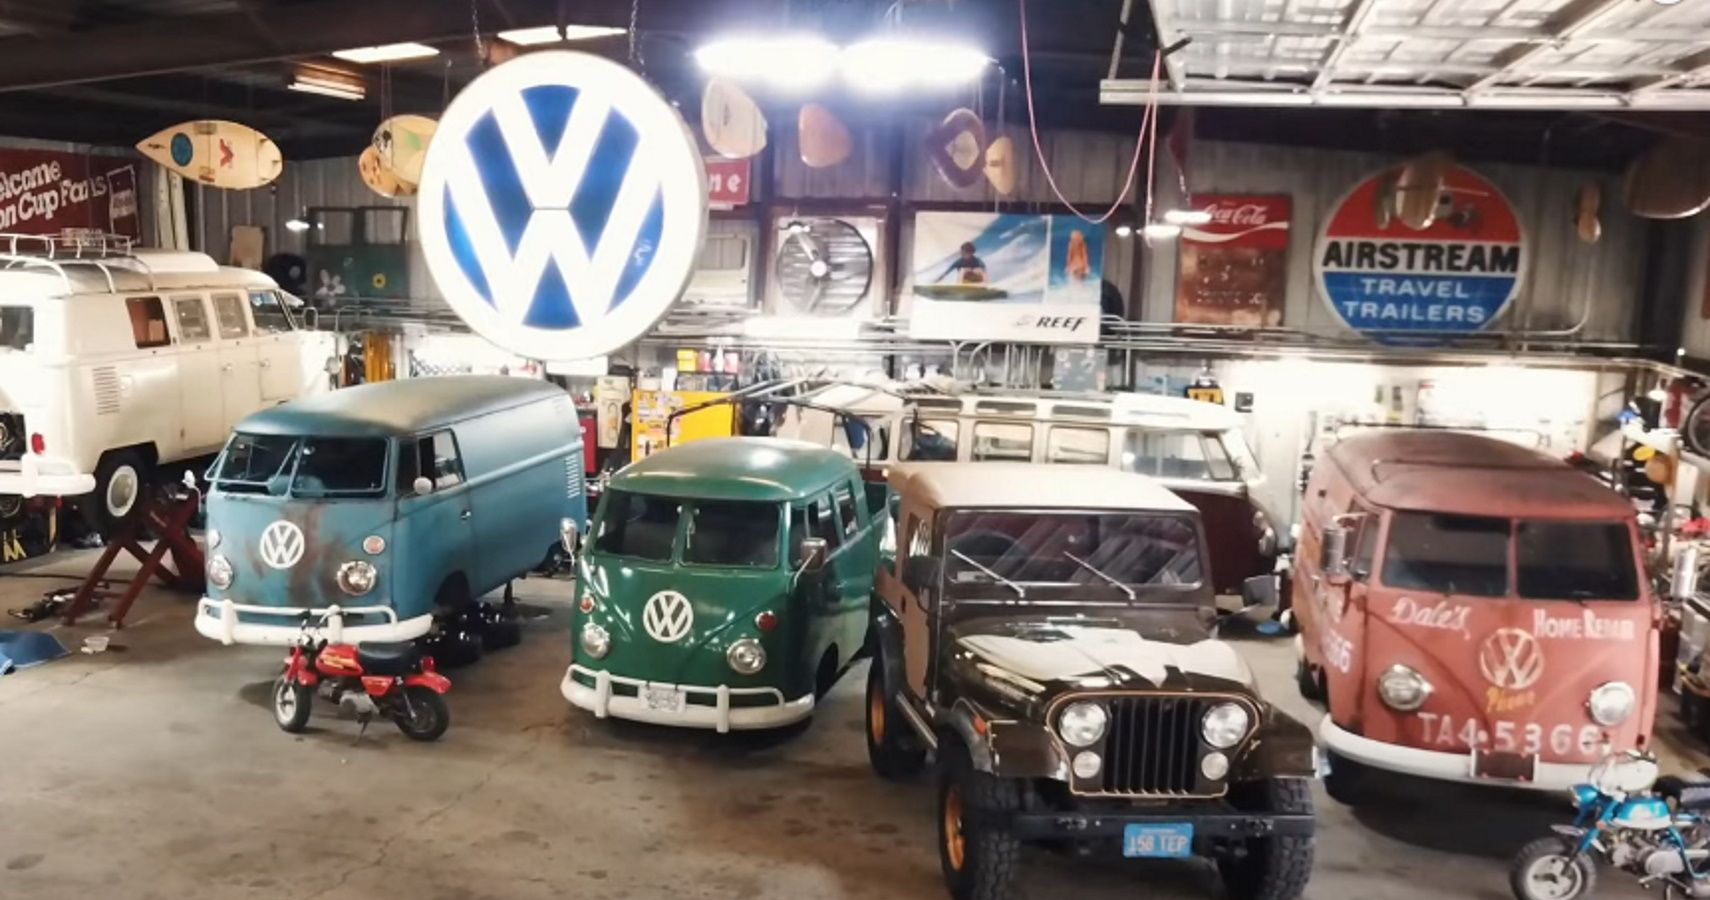 Vintage Volkswagen vans in a garage in Virginia.